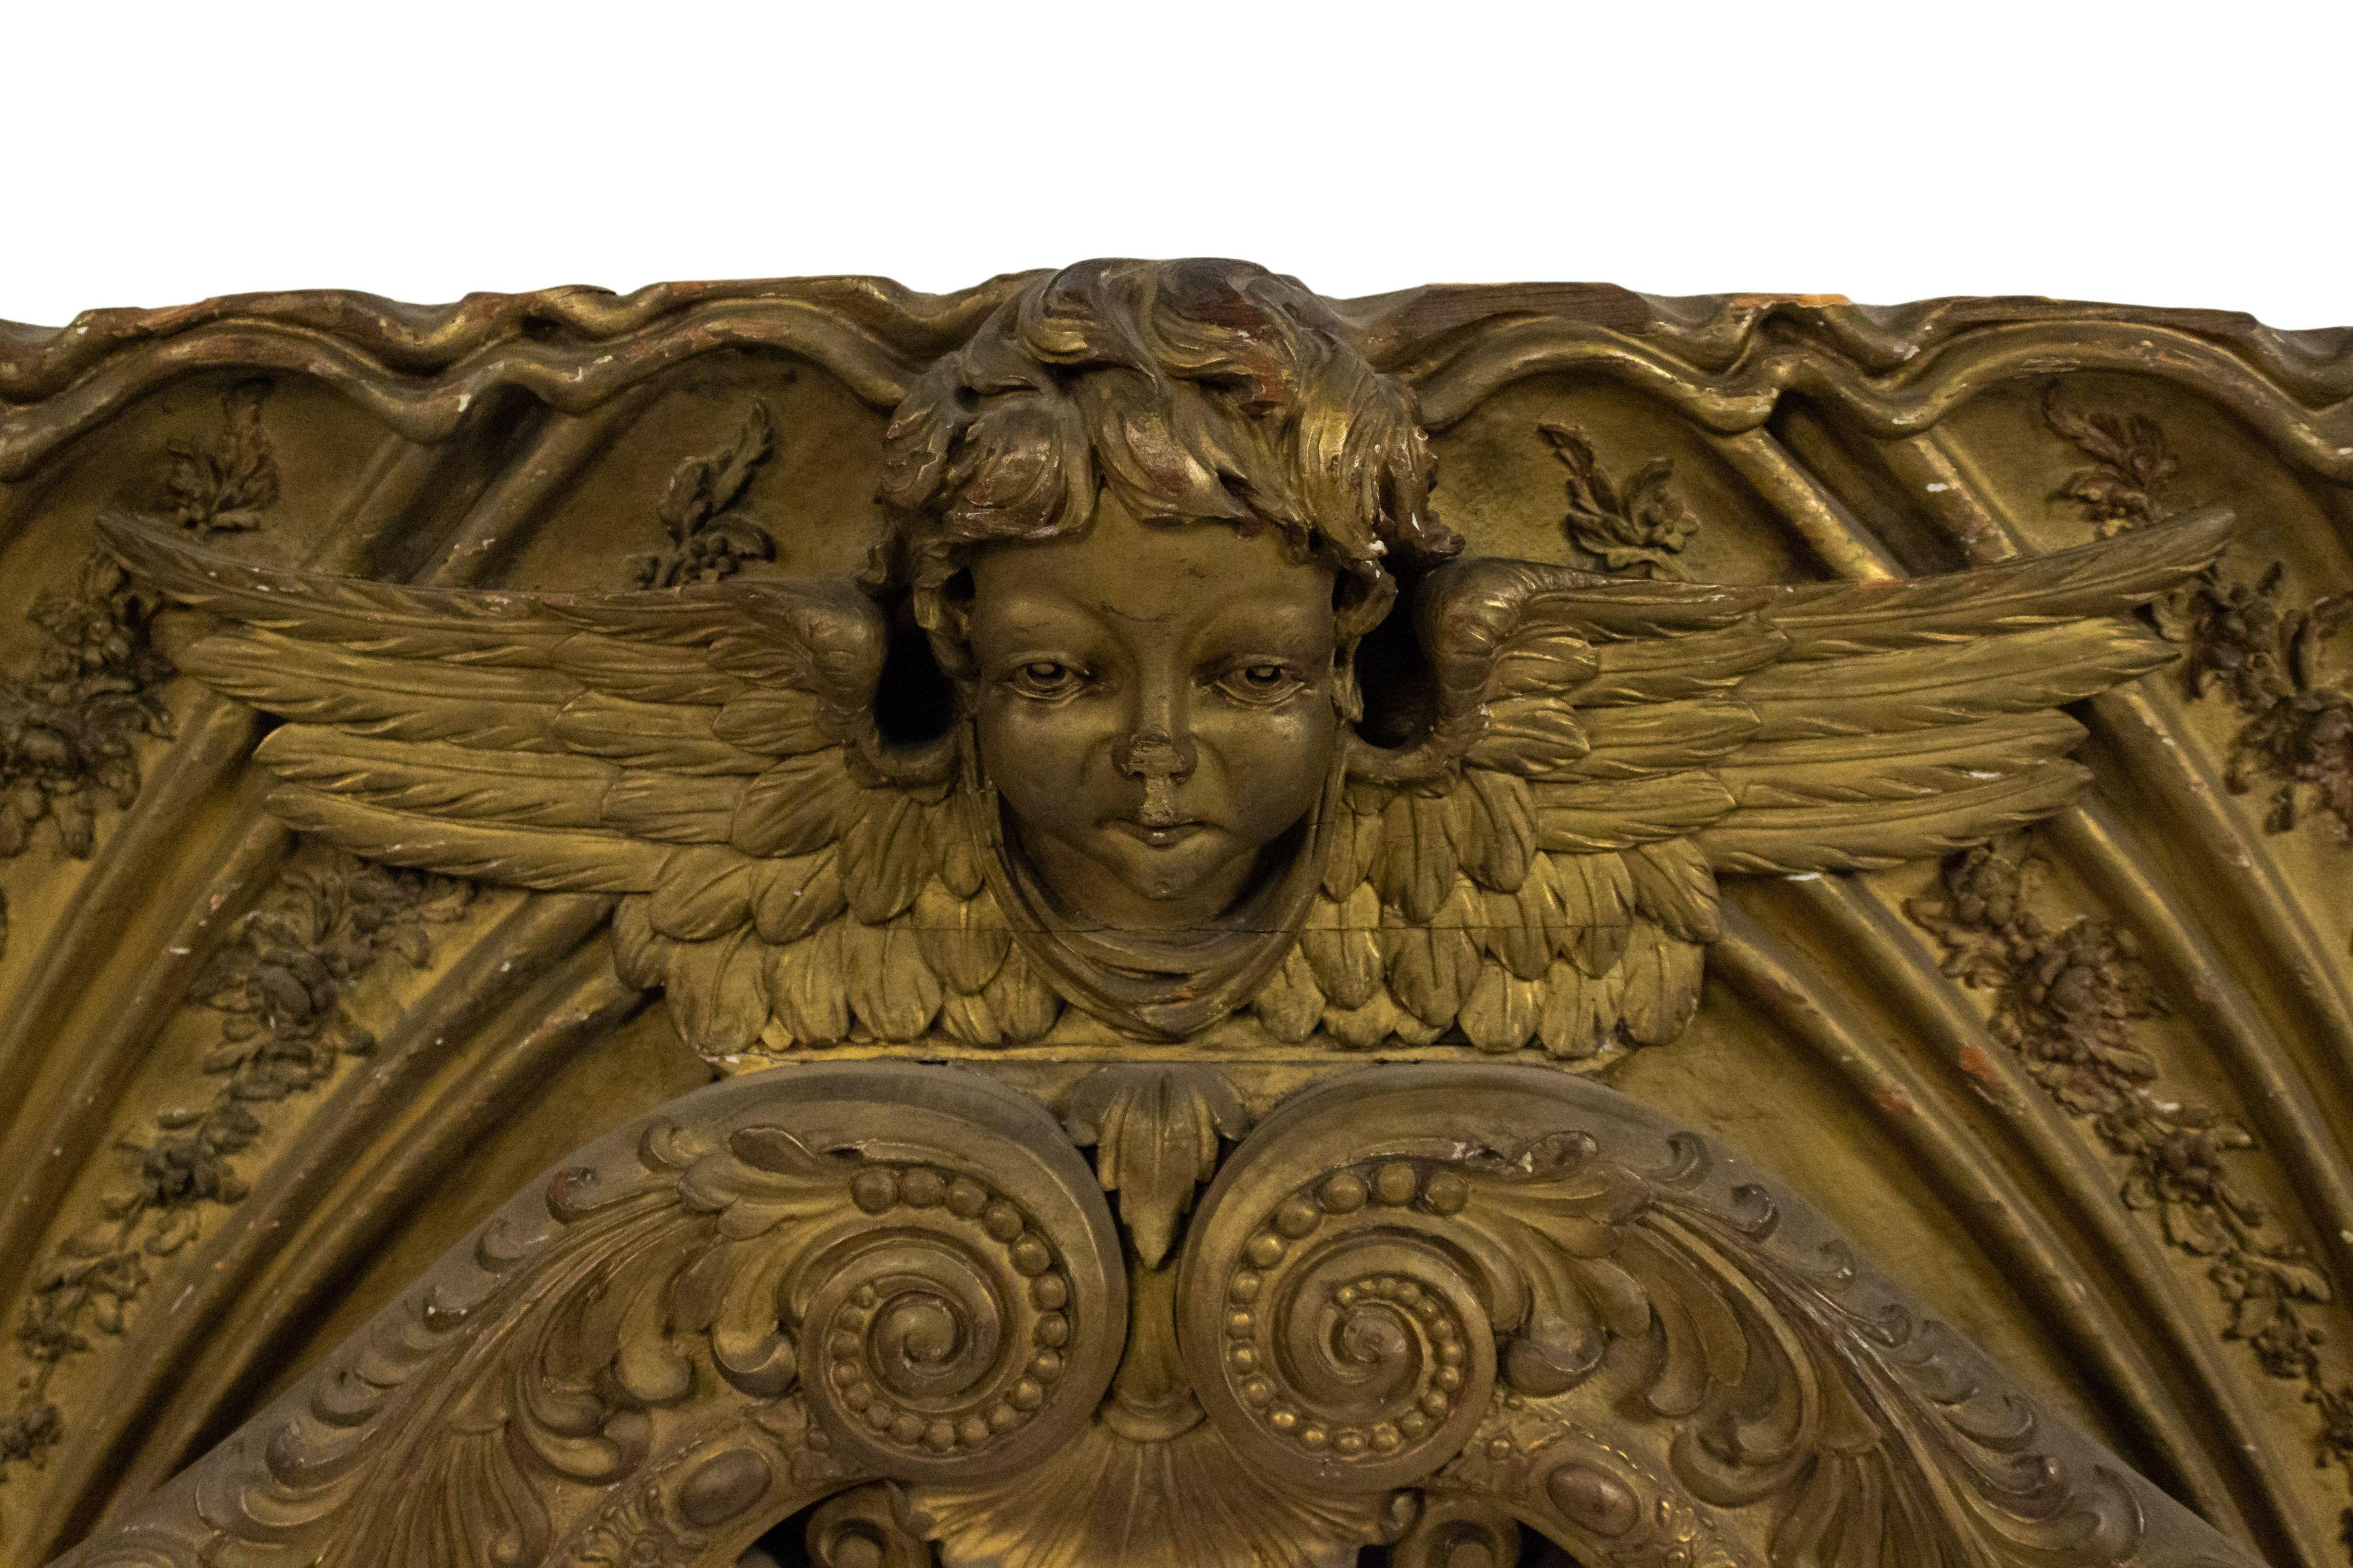 Französische, viktorianische, große, vergoldete, bogenförmige, horizontale Wandtafel mit 3 geschnitzten, geflügelten Amor-Köpfen und filigranem Scroll-Design.
  